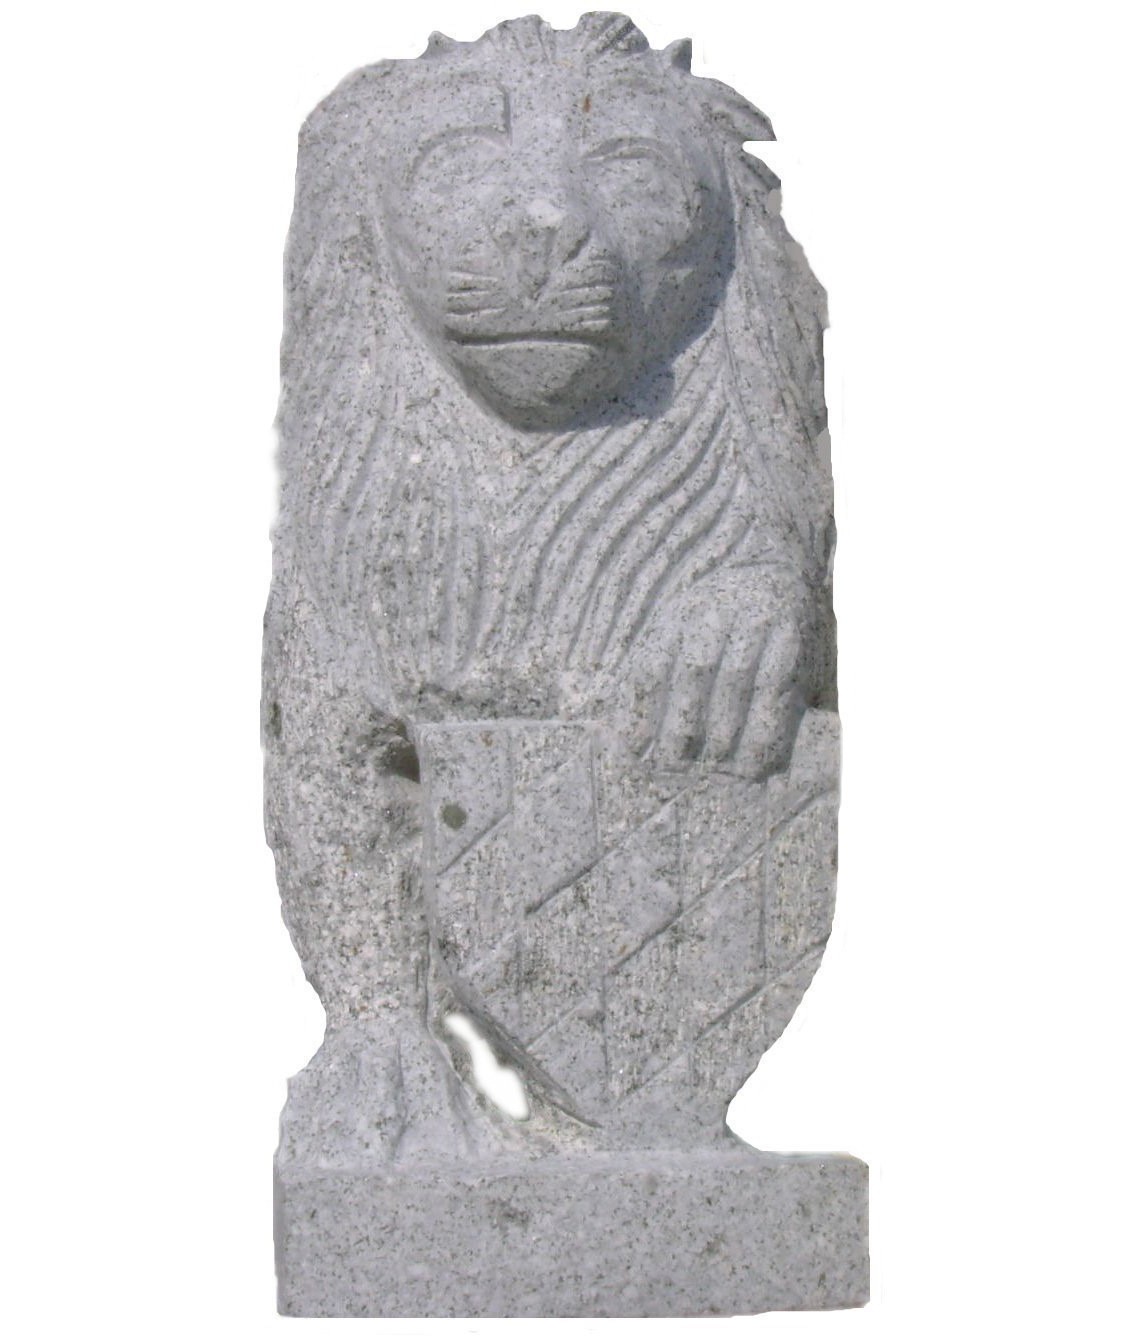 Bayerischer Löwe mit Wappen, Höhe ca. 40 cm, Granit grau